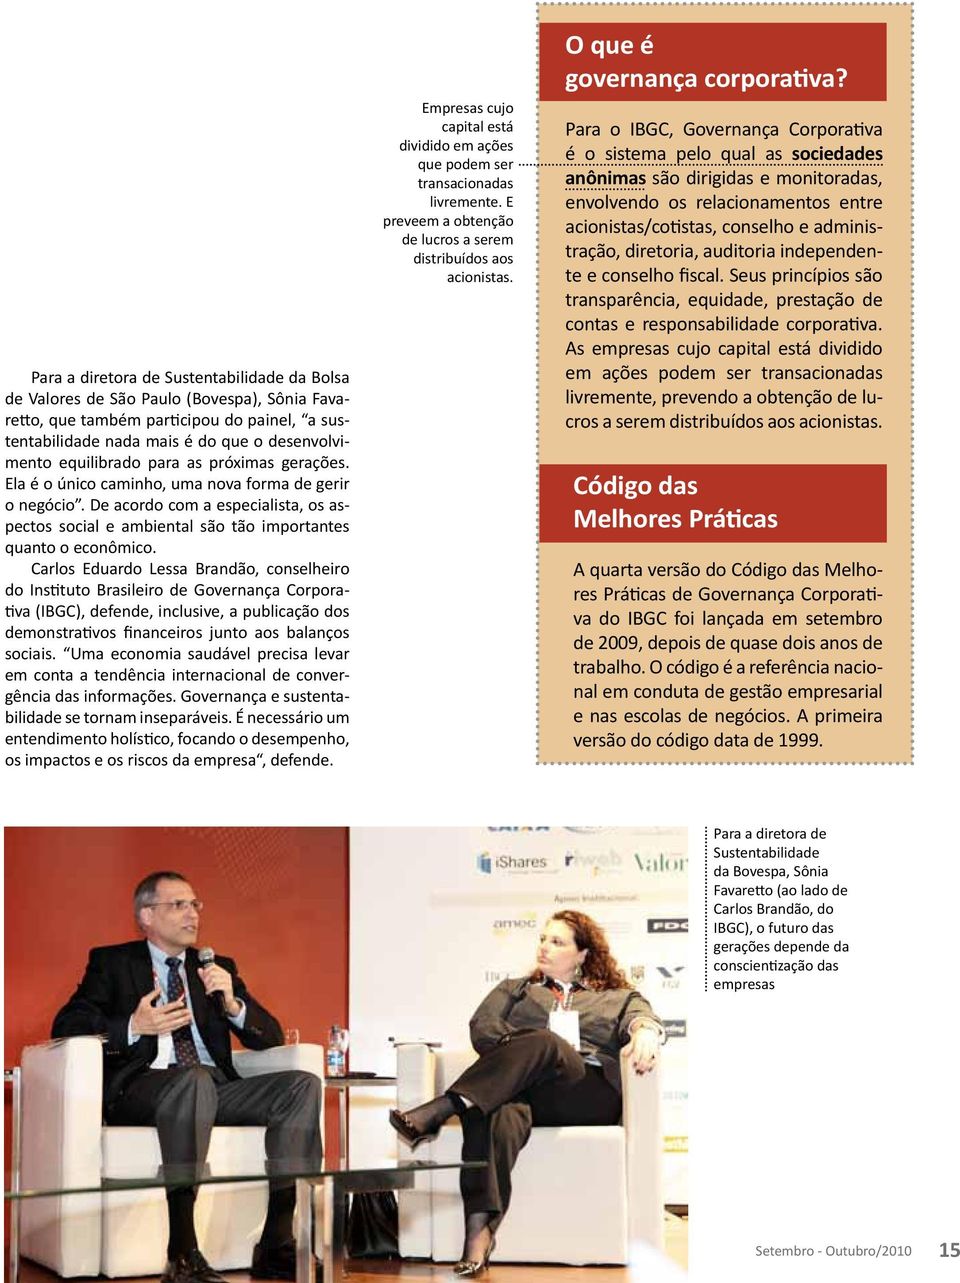 Carlos Eduardo Lessa Brandão, conselheiro do Instituto Brasileiro de Governança Corporativa (IBGC), defende, inclusive, a publicação dos demonstrativos financeiros junto aos balanços sociais.